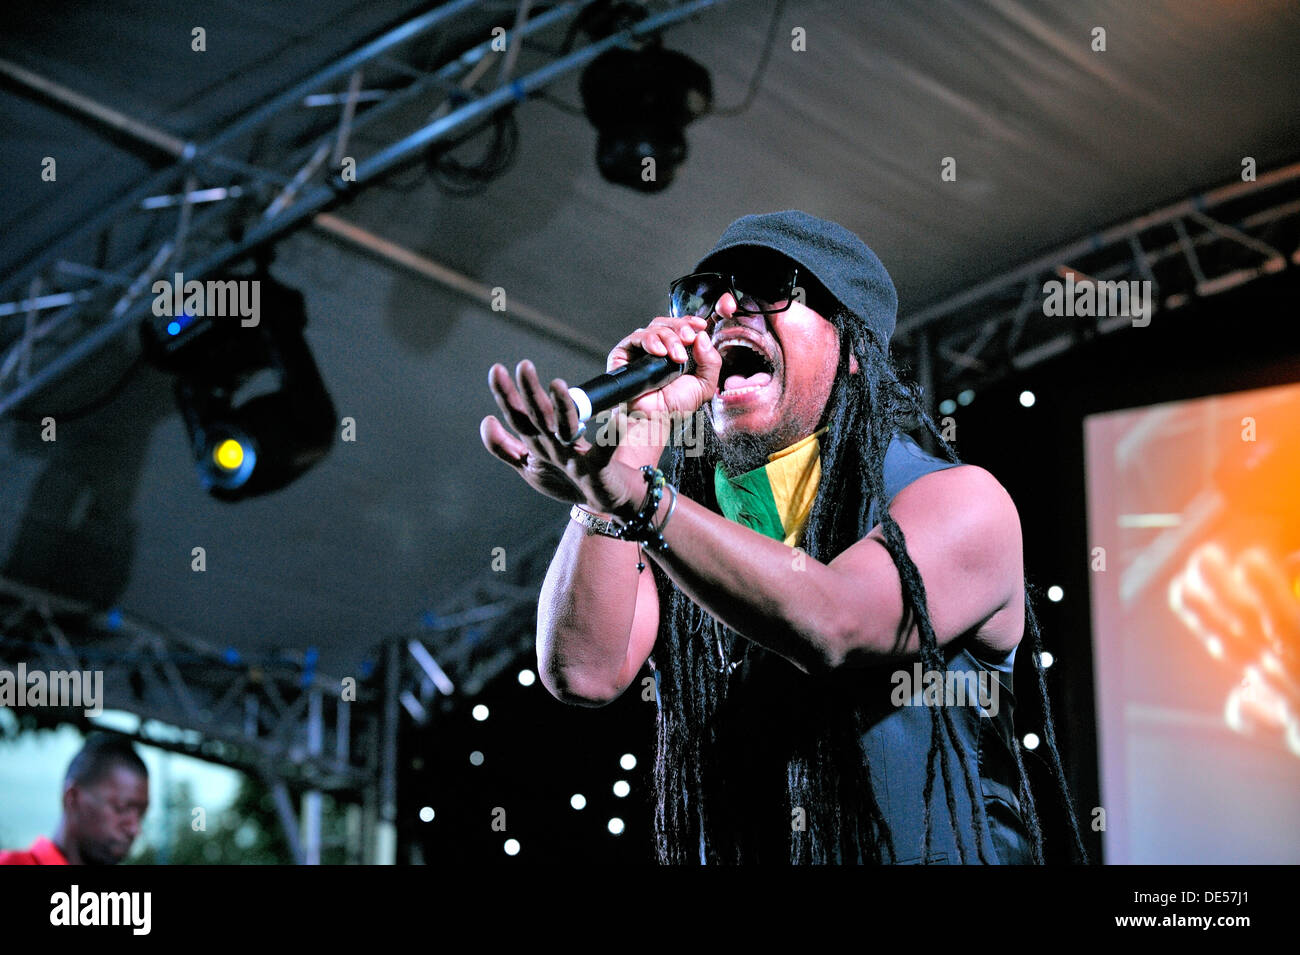 Il giamaicano cantante britannico Maxi Priest sul palco del cavalcavia Show, Hockley Circus, Birmingham, Inghilterra, 18 agosto 2012 Foto Stock